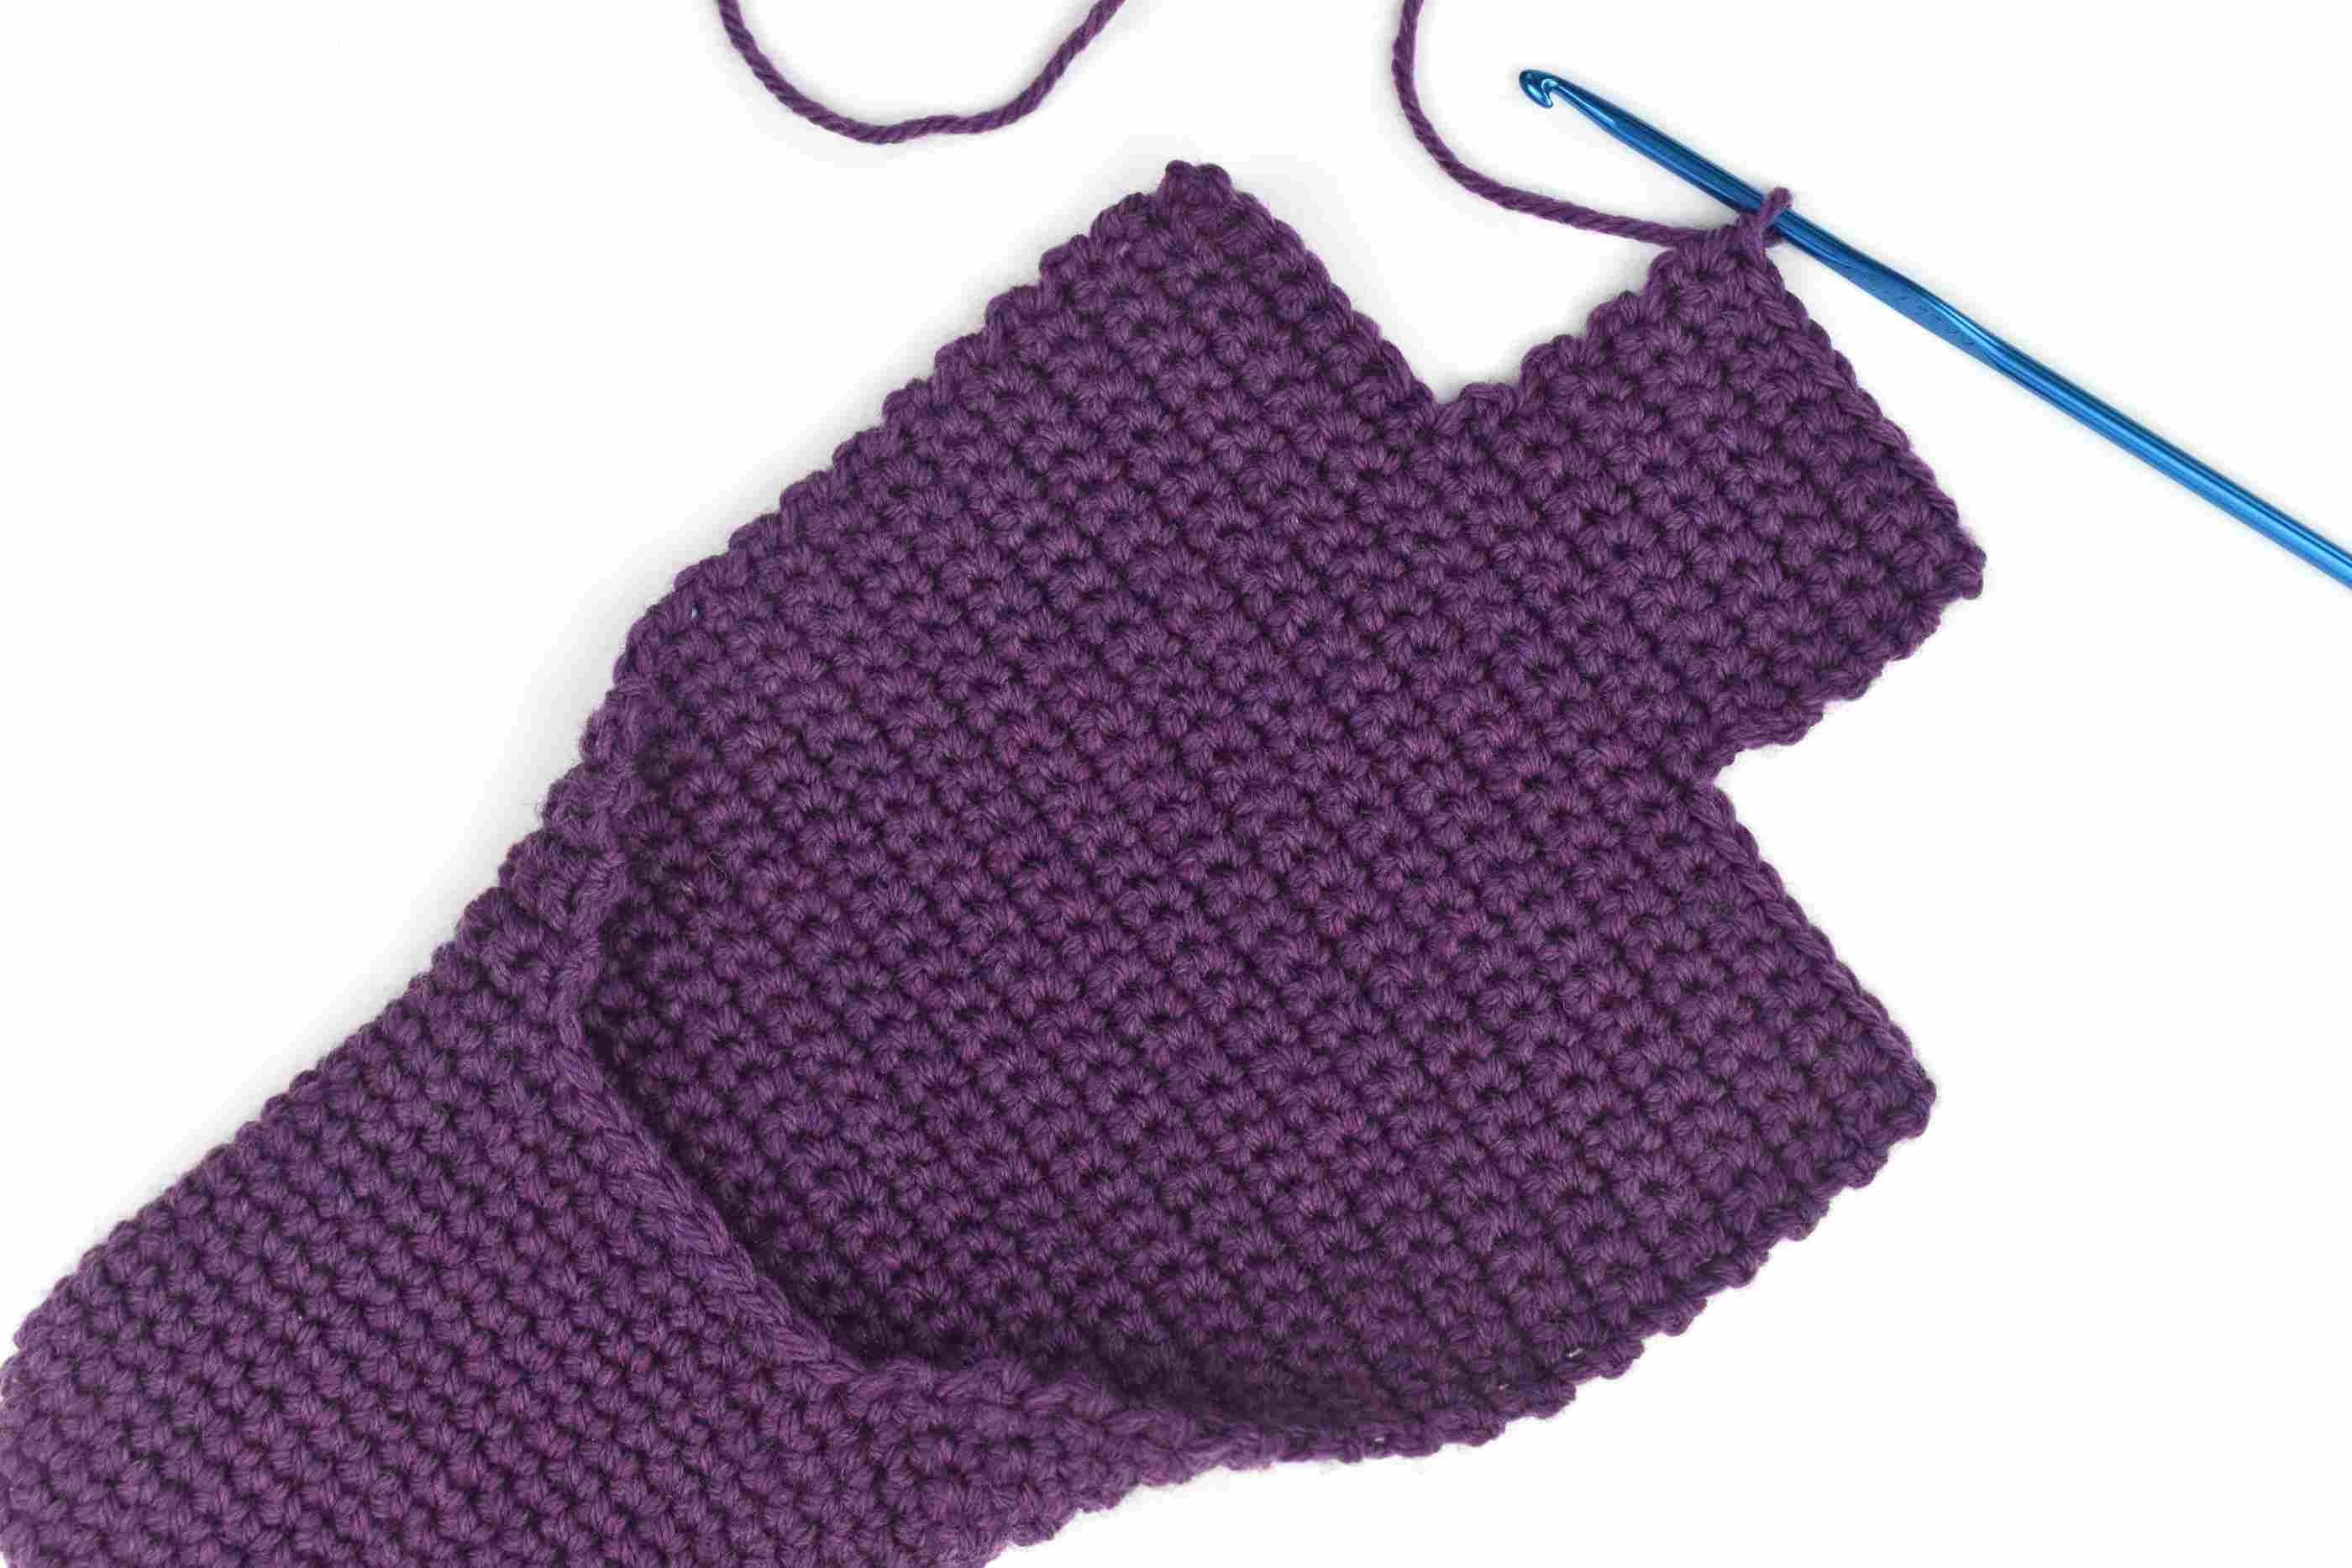 Crochet Bootie Pattern For Adults Simple Crochet Slippers Free Pattern